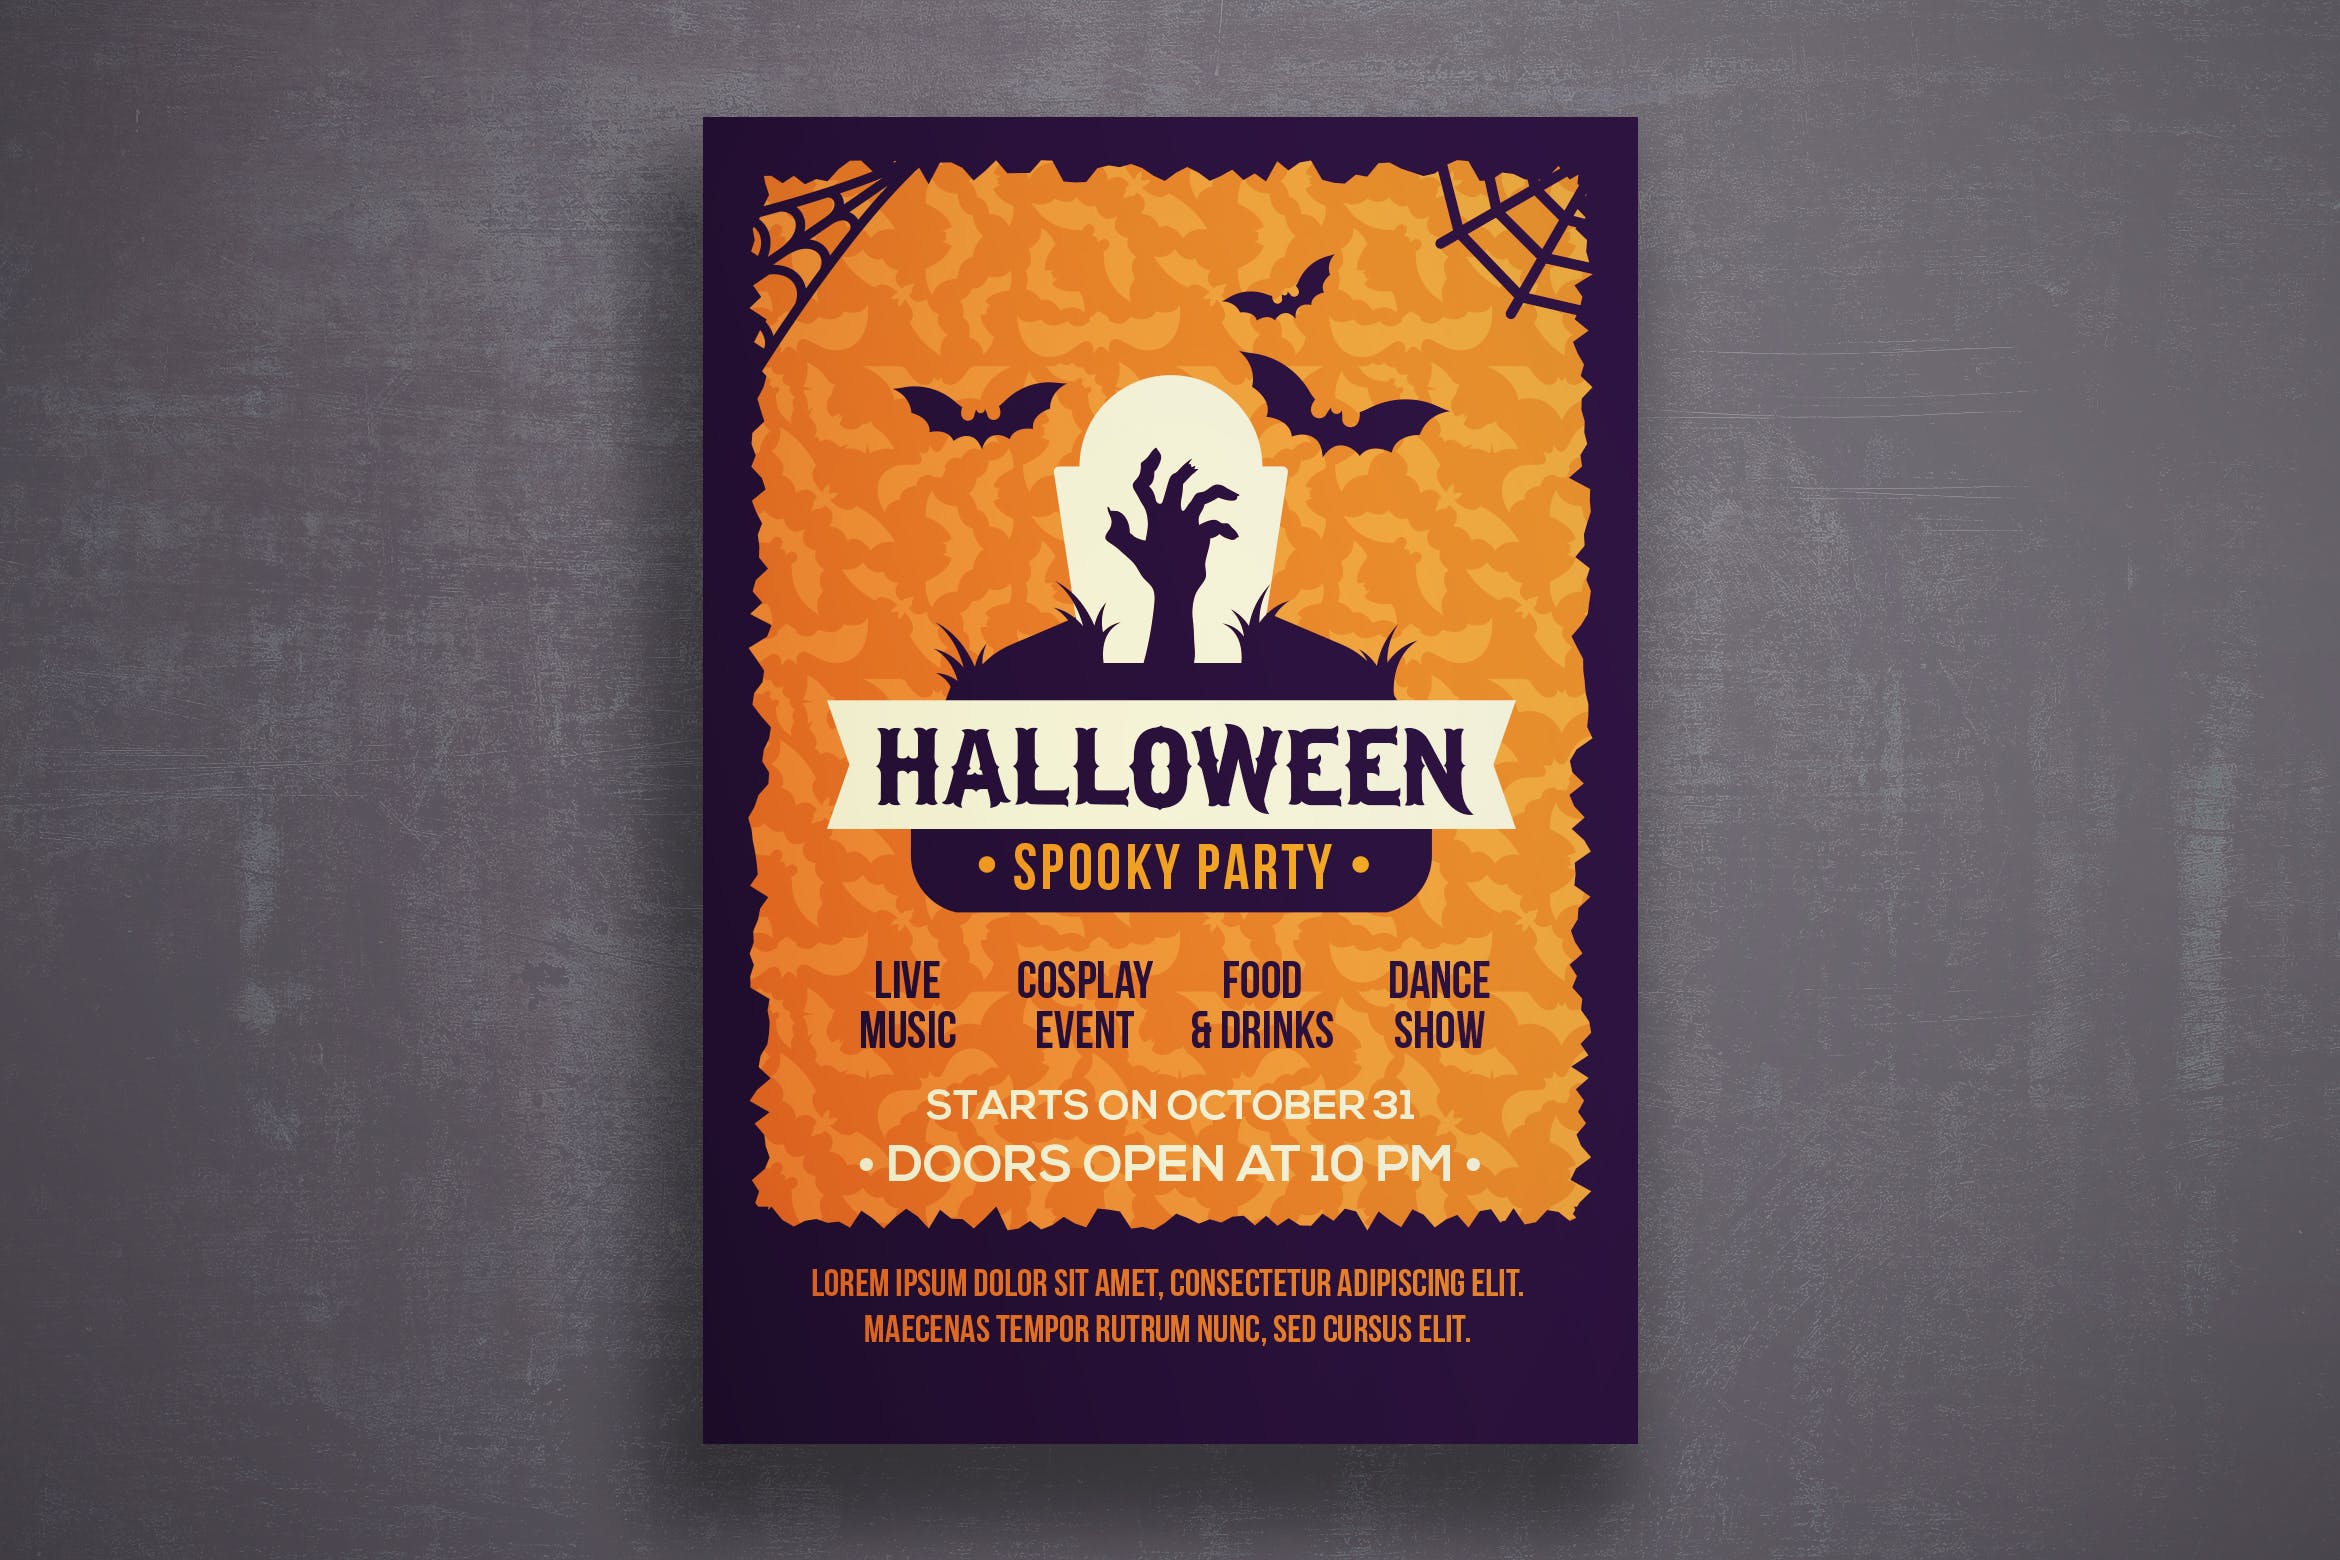 万圣节恐怖之夜活动邀请海报传单素材库精选PSD模板v5 Halloween flyer template插图